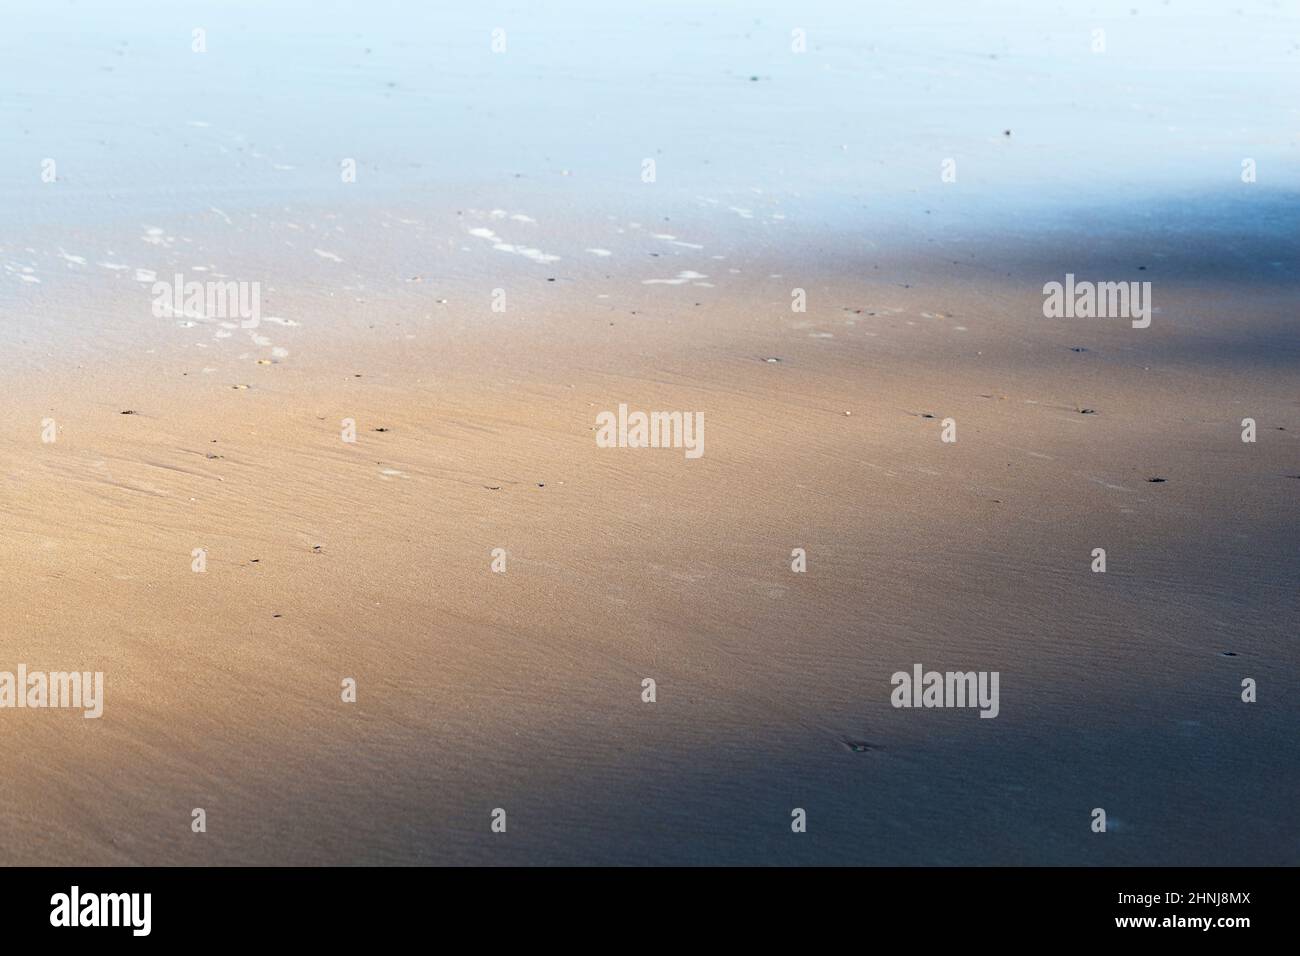 Gioco di luci e ombre mattine sulla spiaggia, astratto stato d'animo marino Foto Stock